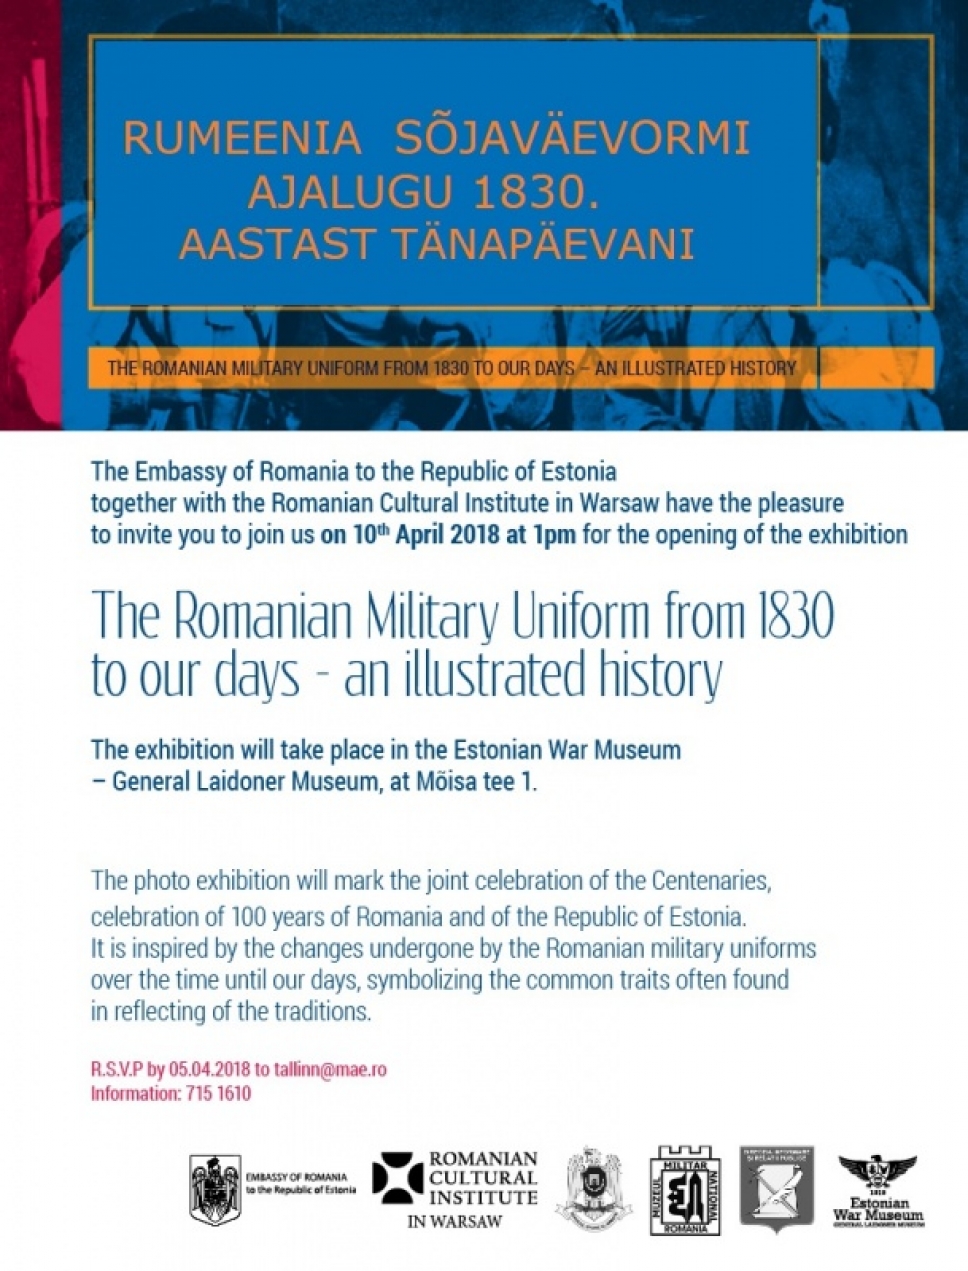 Istoria uniformei militare românești de la 1830 până în prezent – expoziție de fotografie la Tallinn